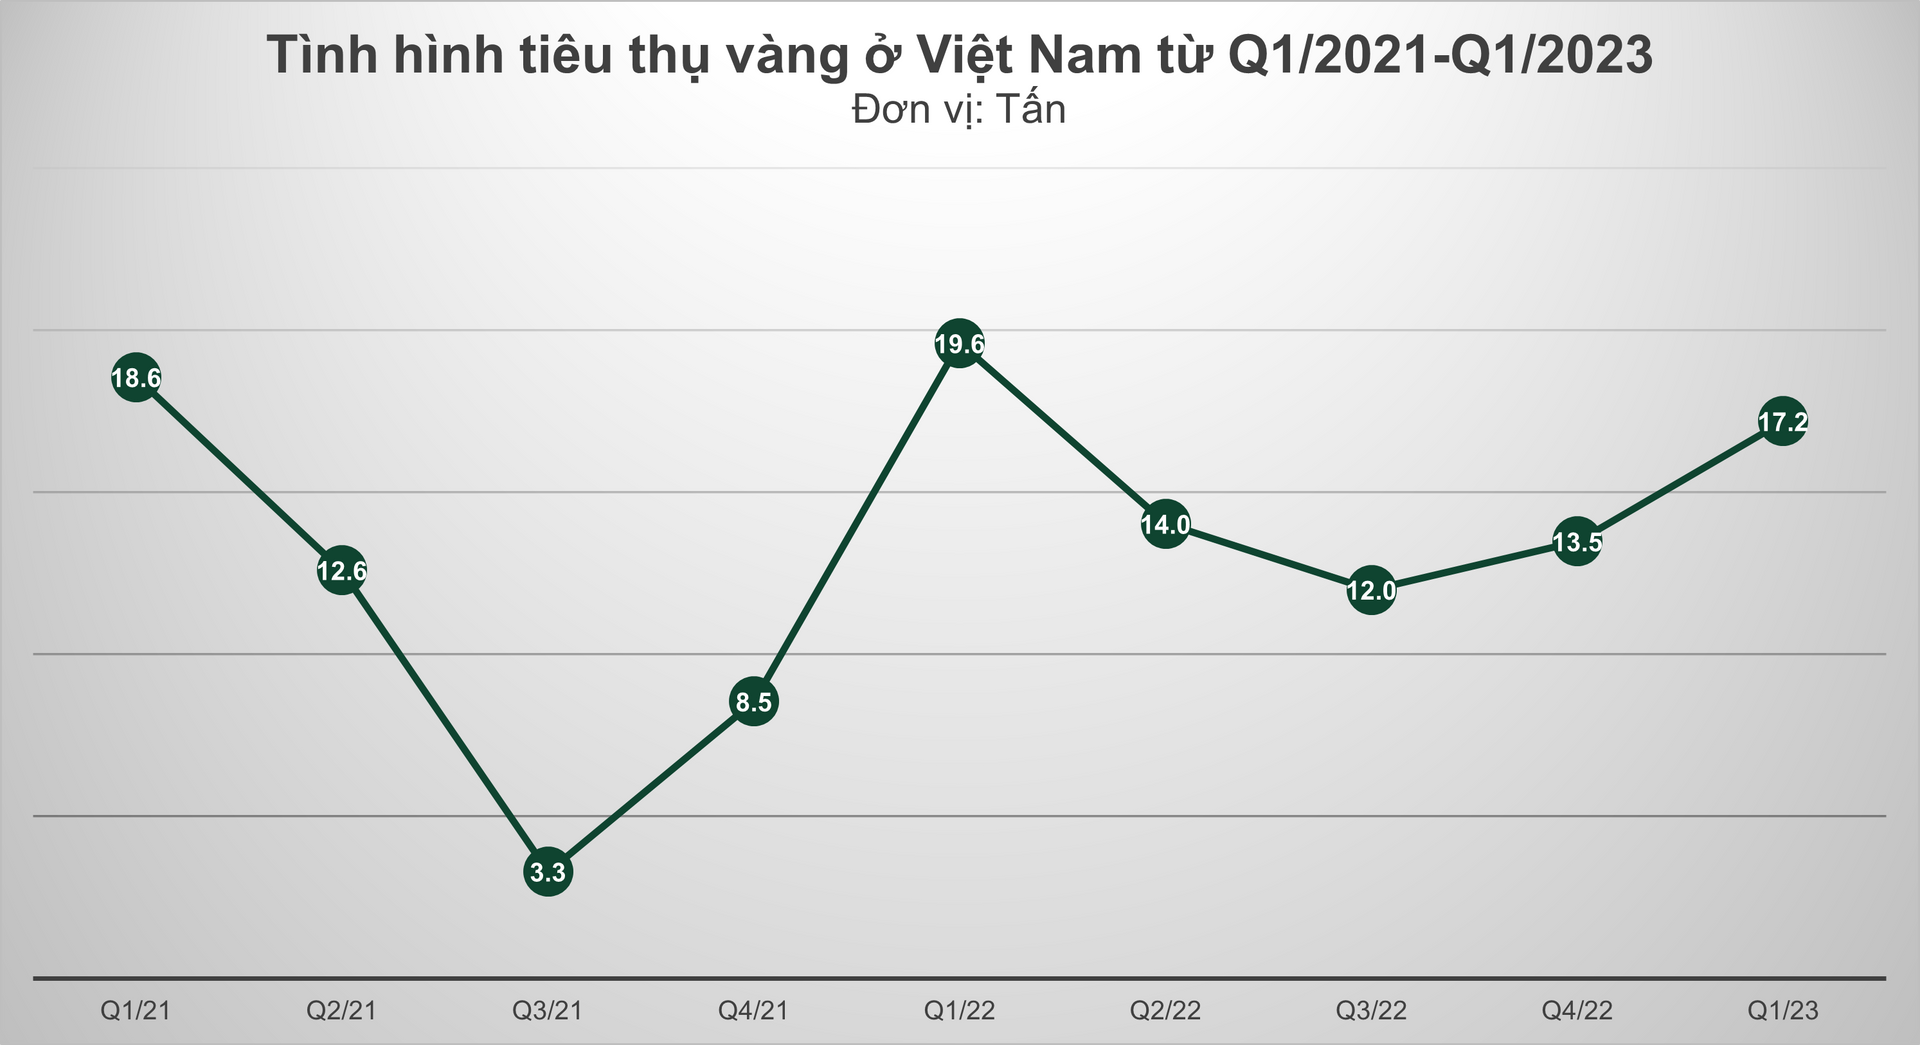 Người Việt mua ít hơn 2,4 tấn vàng trong quý I/2023, nguyên nhân do đâu? - Ảnh 1.